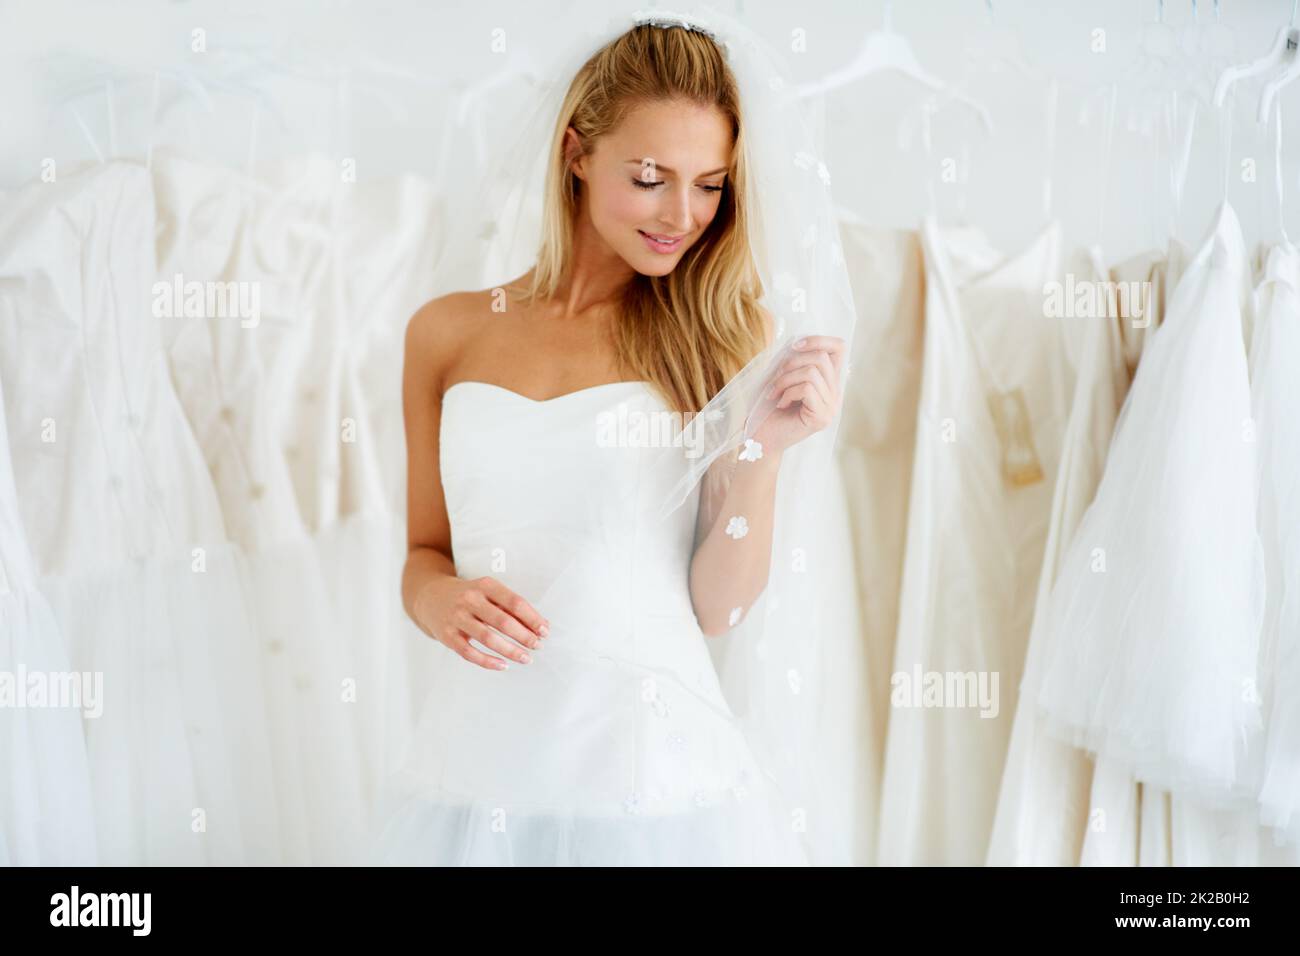 Shes gehen, um eine schöne Braut zu machen. Eine junge Braut, die ihr Hochzeitskleid anprobiert - Copyspace. Stockfoto